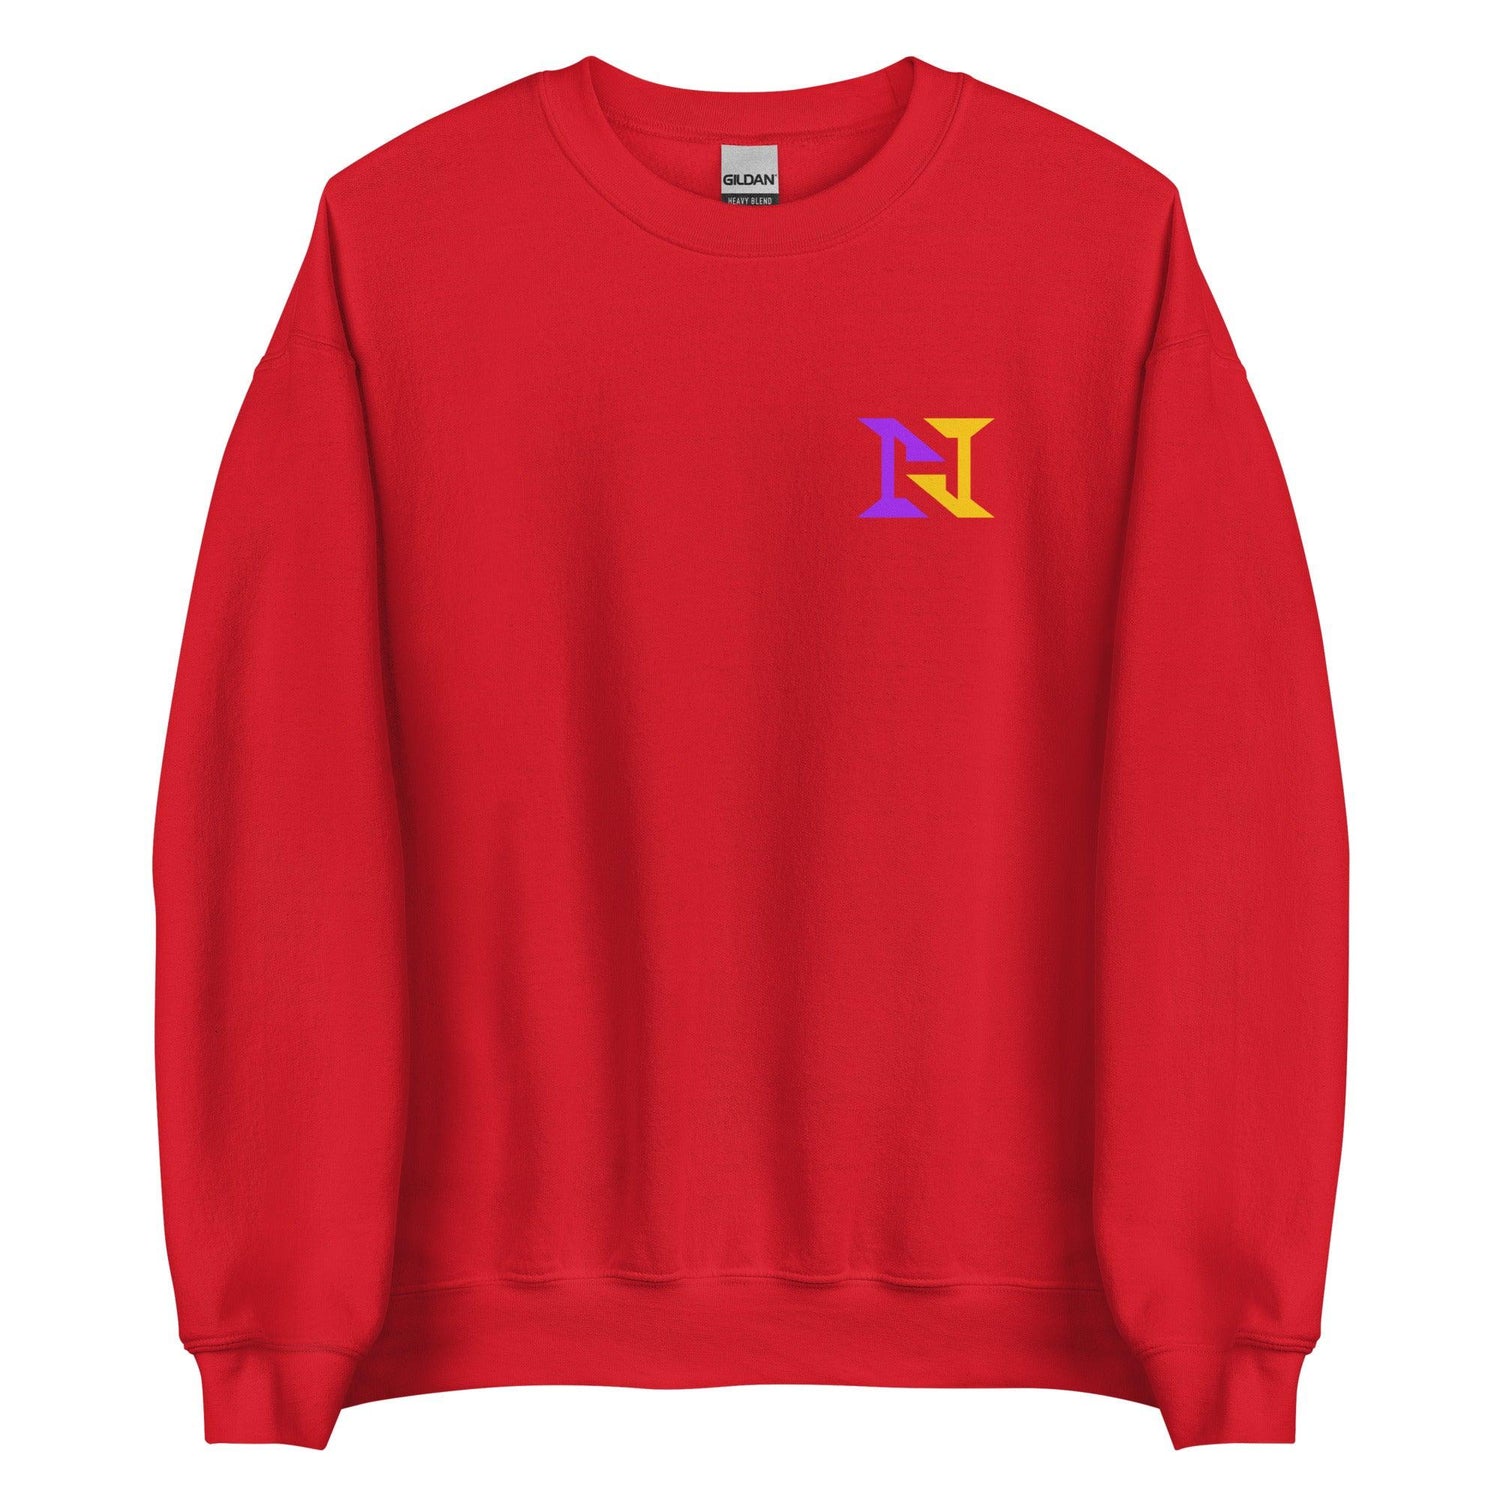 Nick Holmes "Essential" Sweatshirt - Fan Arch